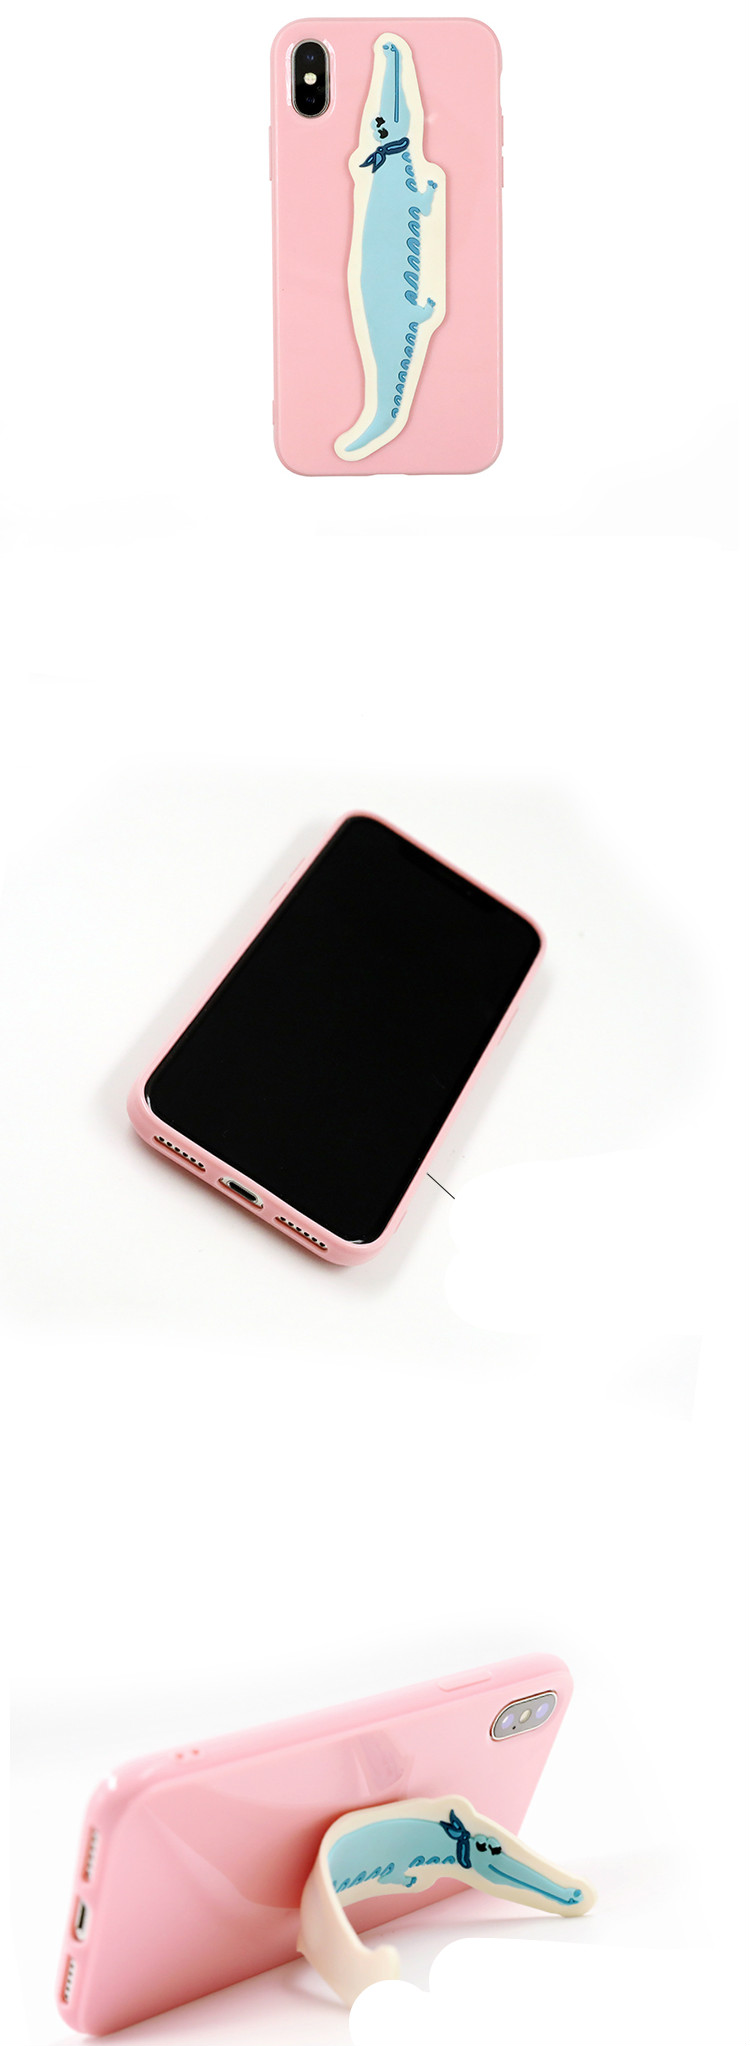 個性的ピンク鰐ワニkate spadeかわいいiPhoneX/8Plus/8ケースわに卓上スタンド機能ケイトスペード支えアイフォン8/7携帯カバー鱷